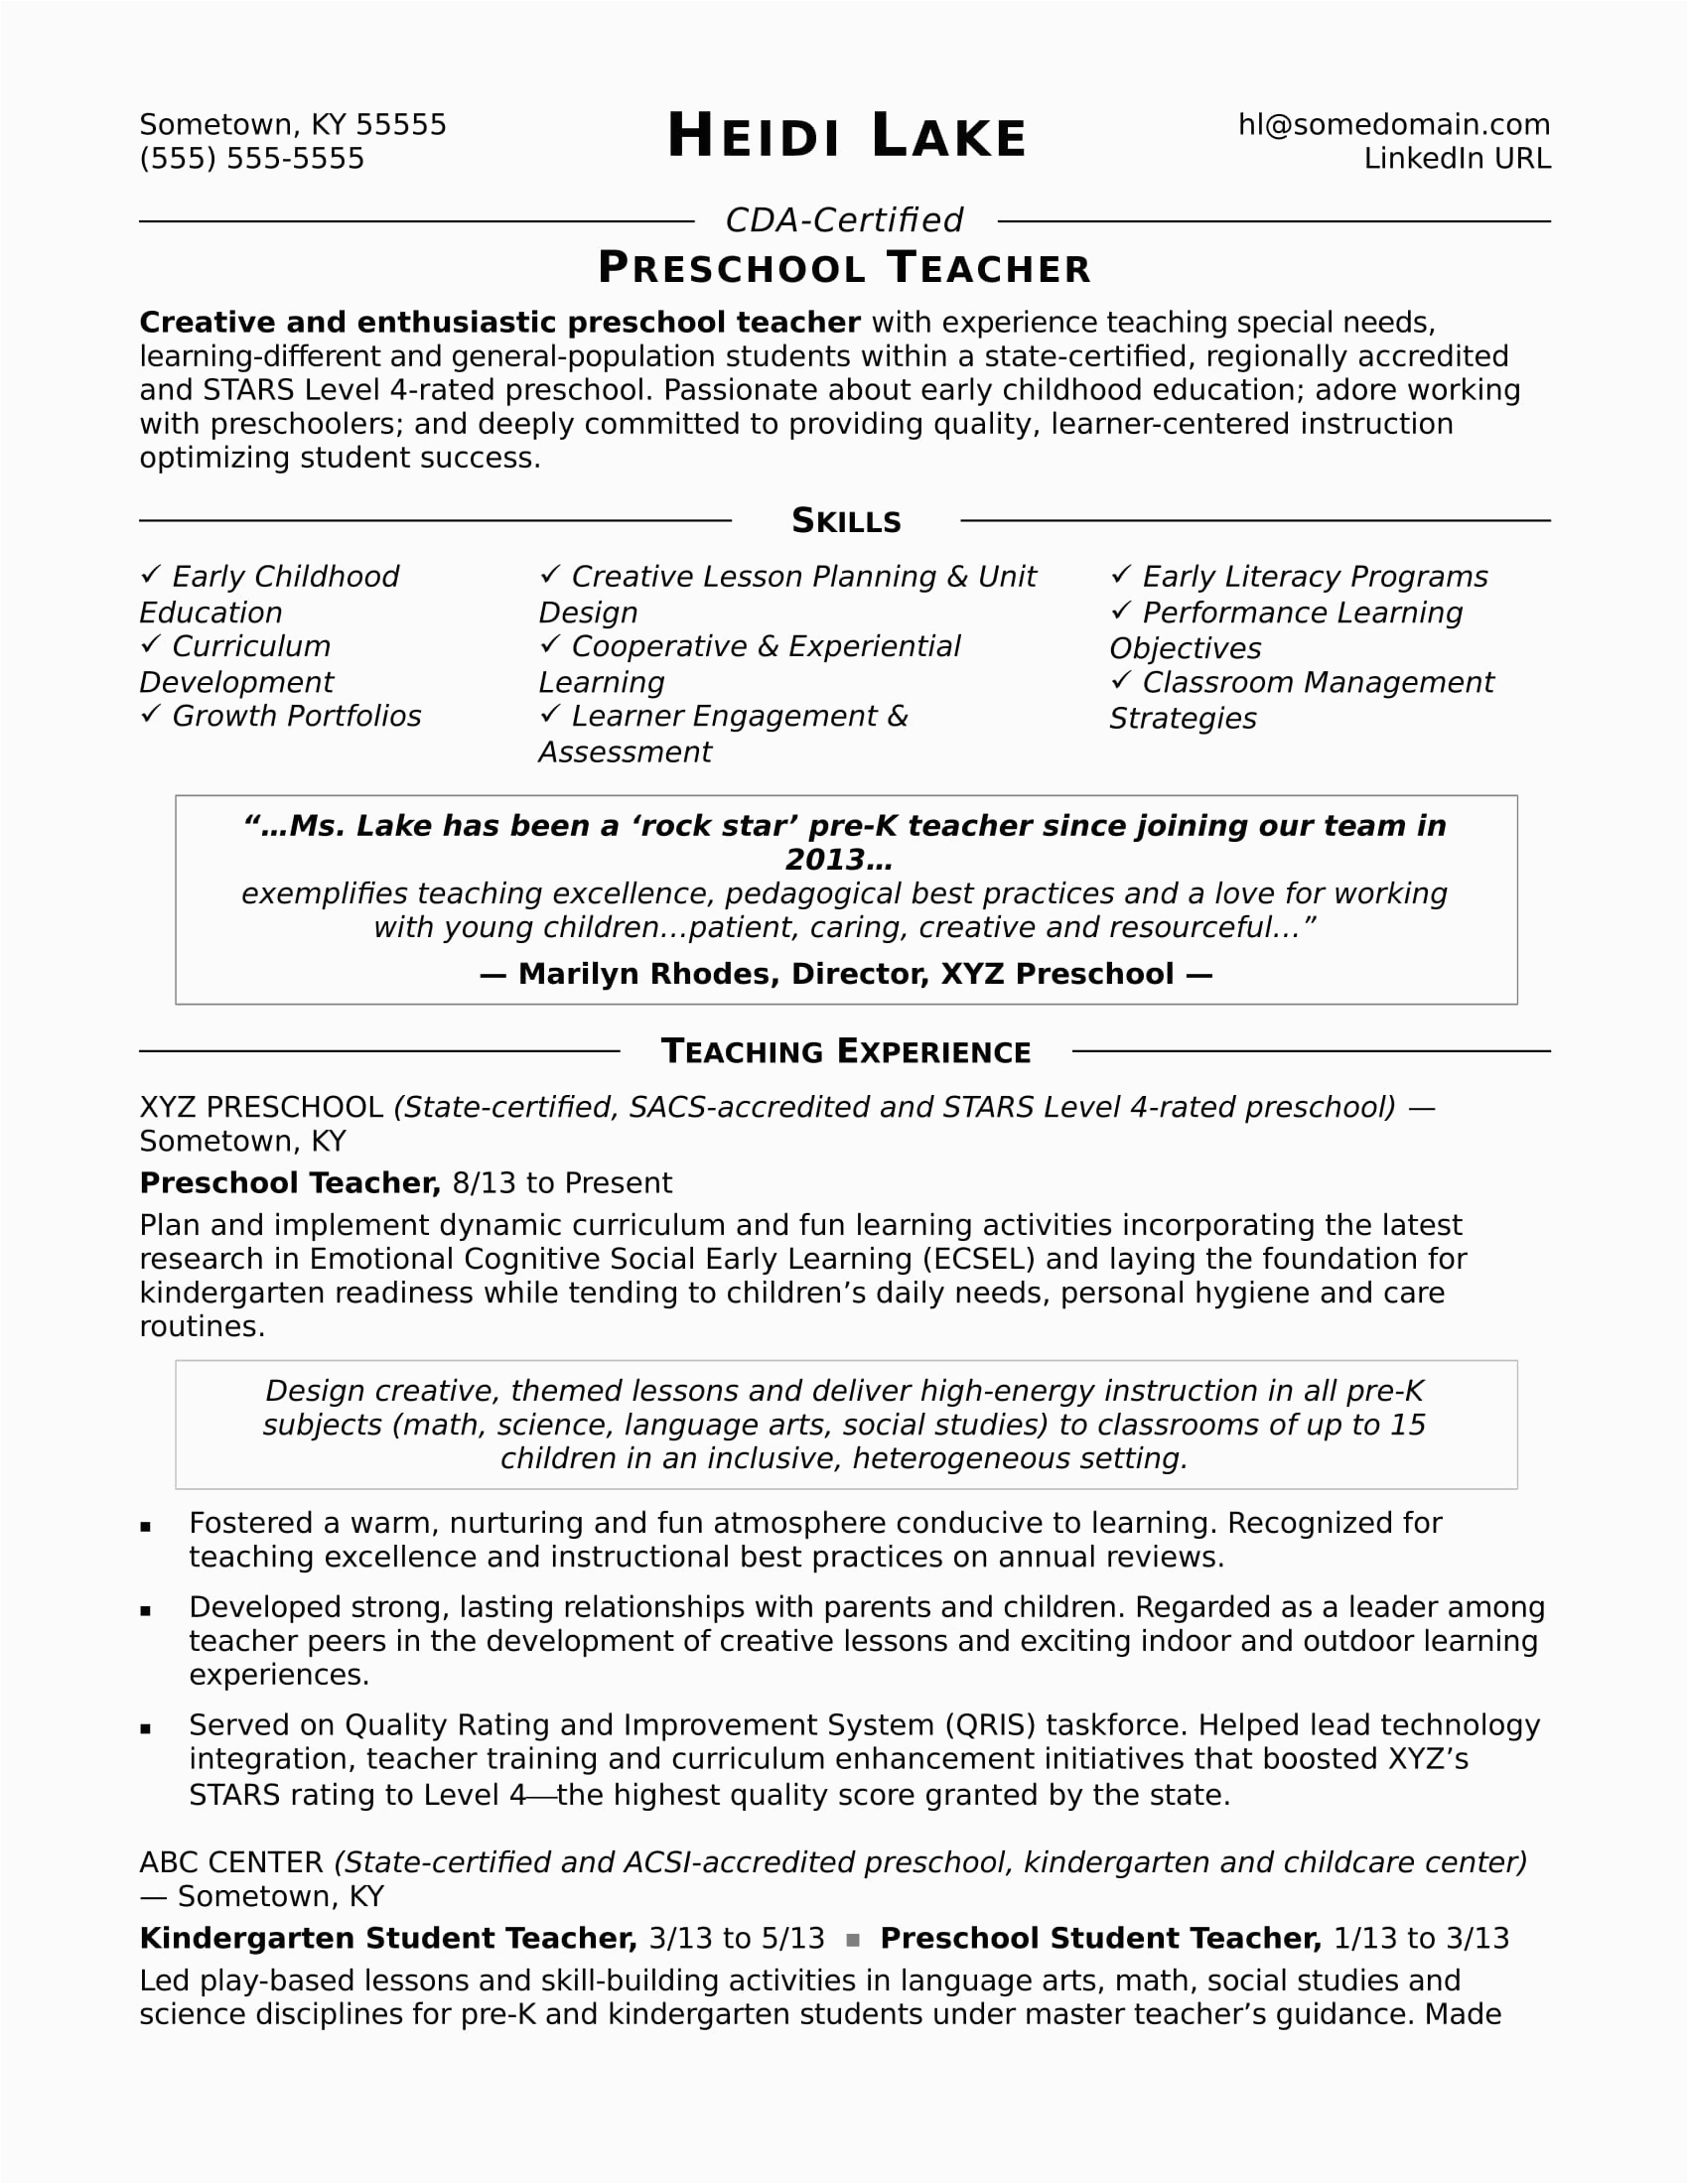 Sample Resume for Teachers for Preschool Preschool Teacher Resume Sample